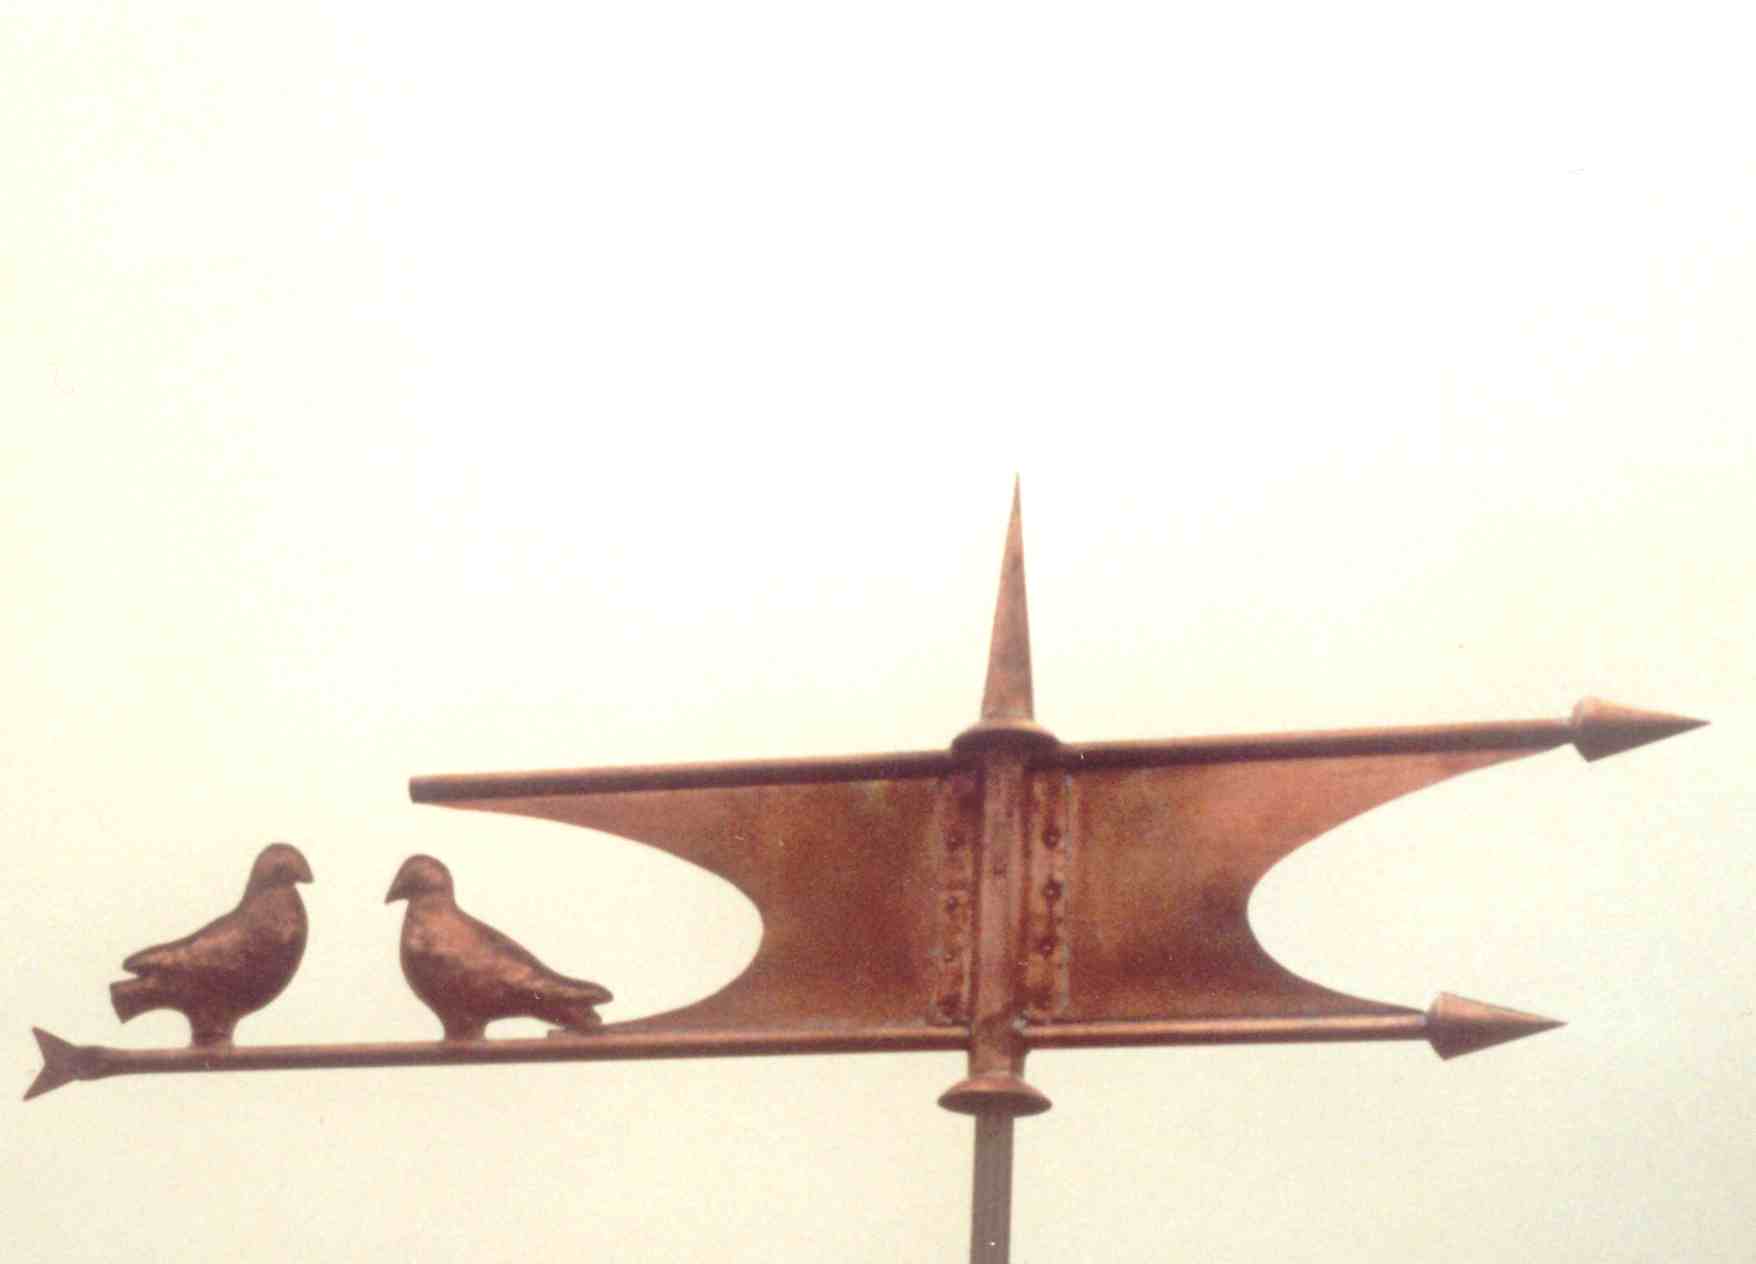 Fahne mit Tauben